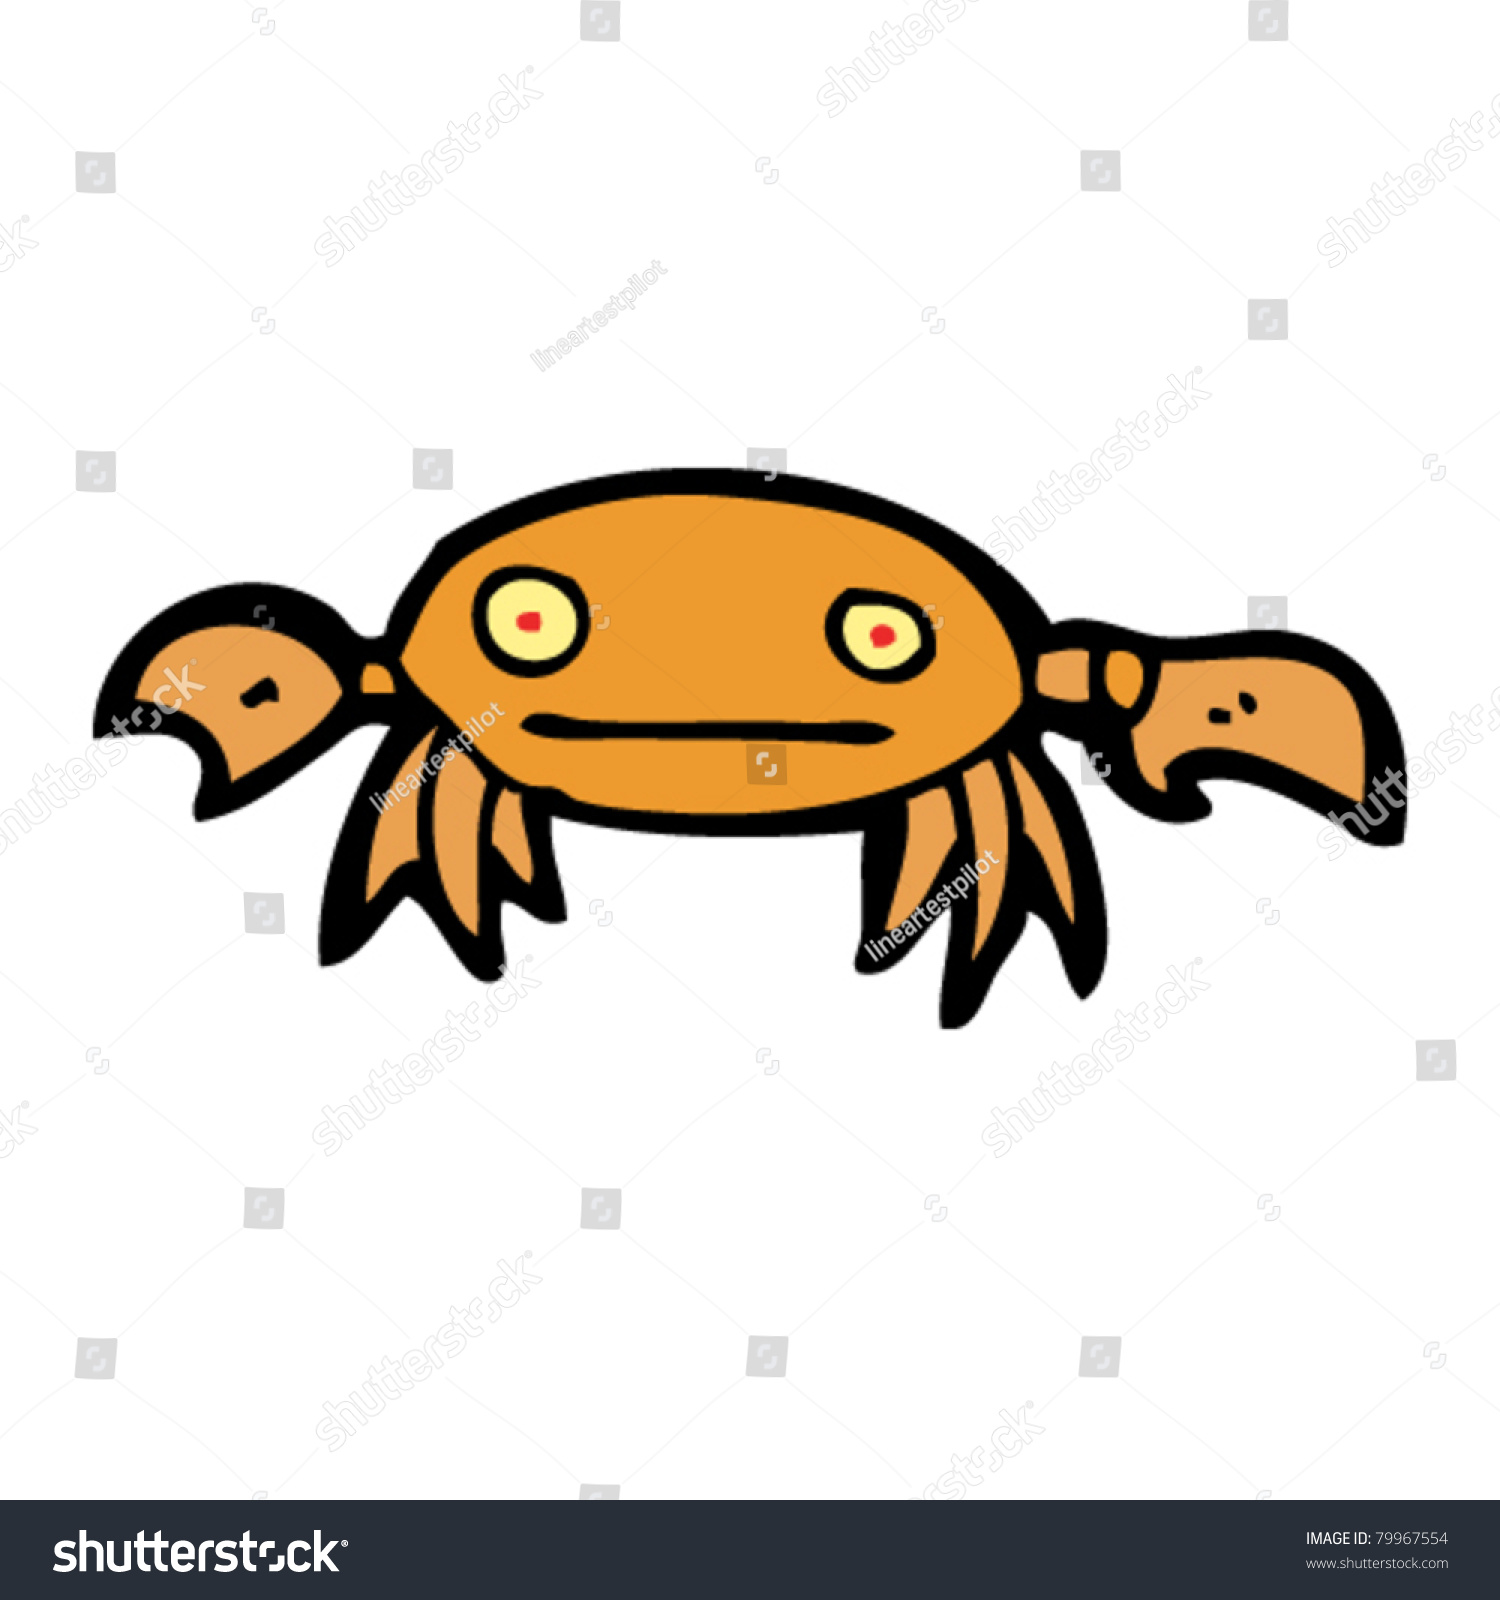 Crab Cartoon Stock Vector Illustration 79967554 : Shutterstock